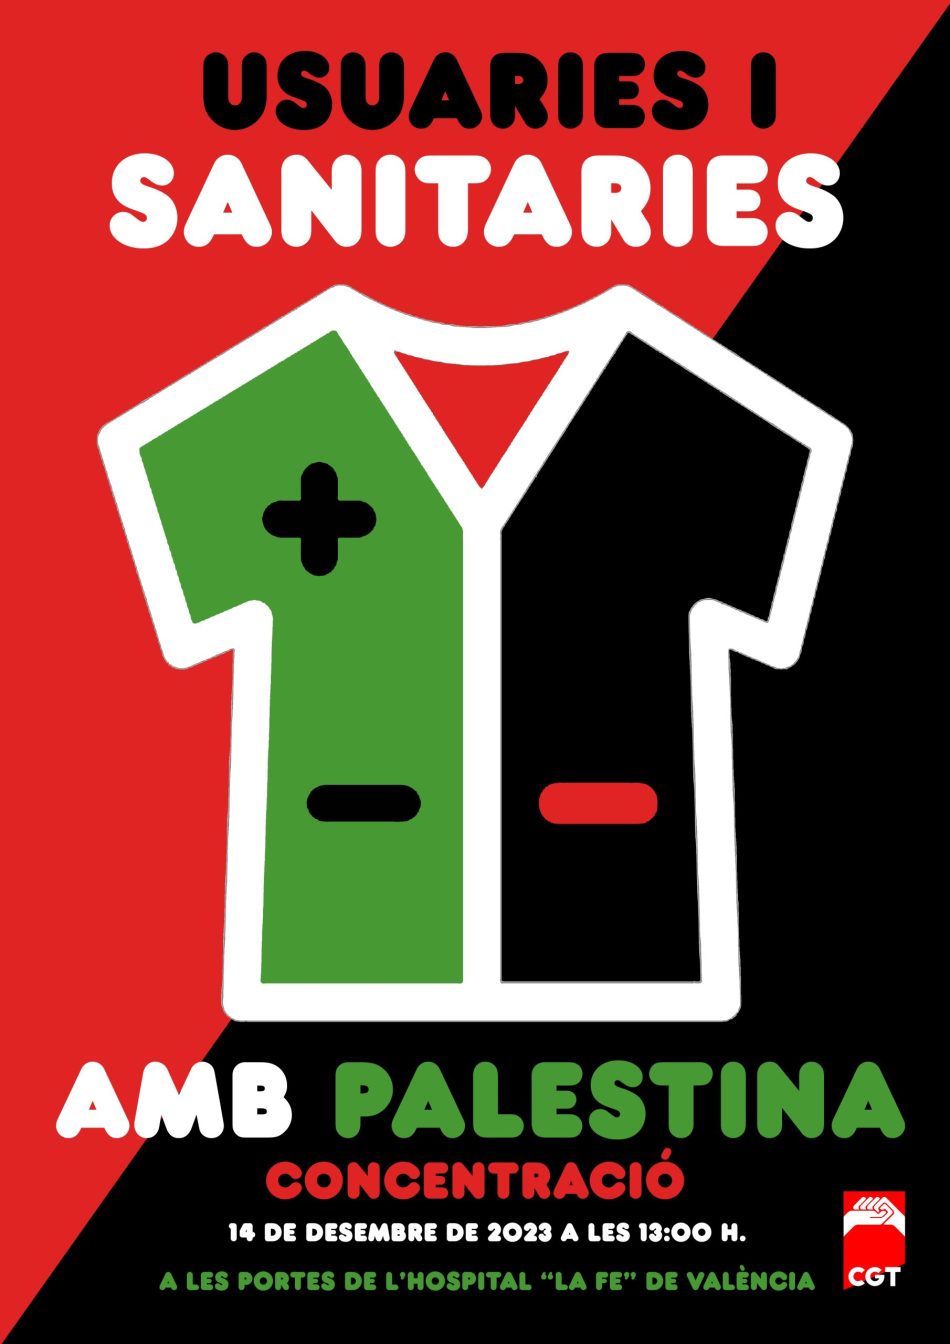 Concentración de usuarias y profesionales sanitarias contra el genocidio en Palestina